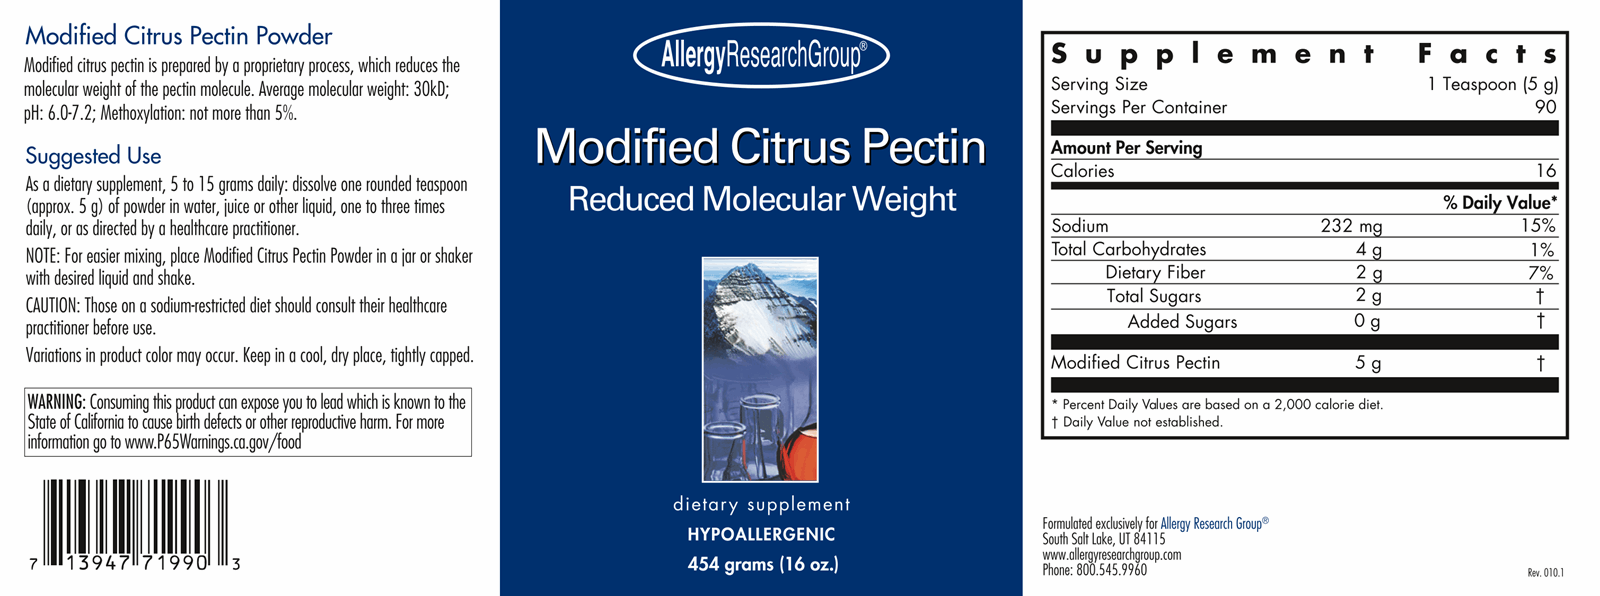 Modified Citrus Pectin Powder 